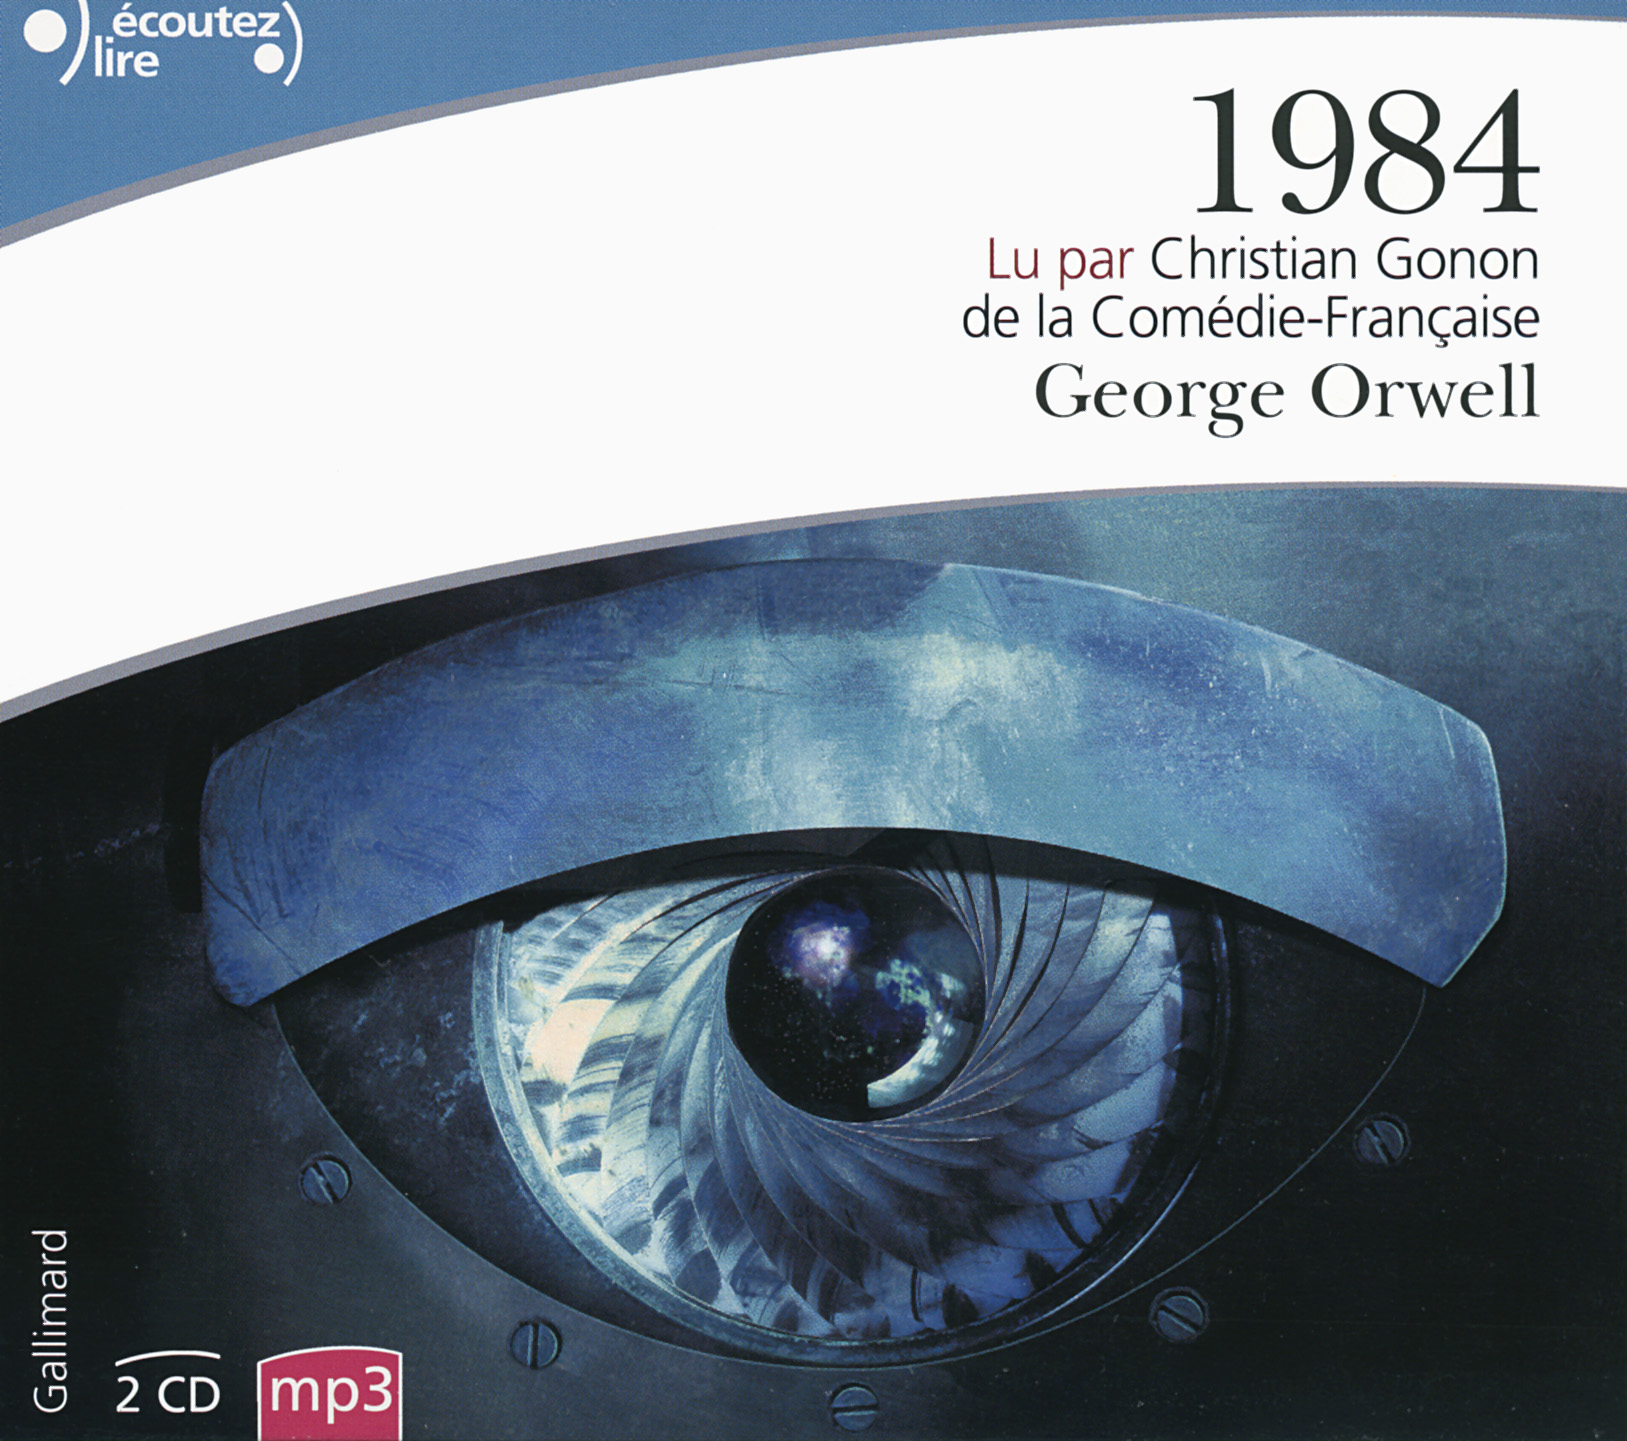 1984 Книга. Джордж Оруэлл "1984". 1984 Livre Audio Français -George Orwell.